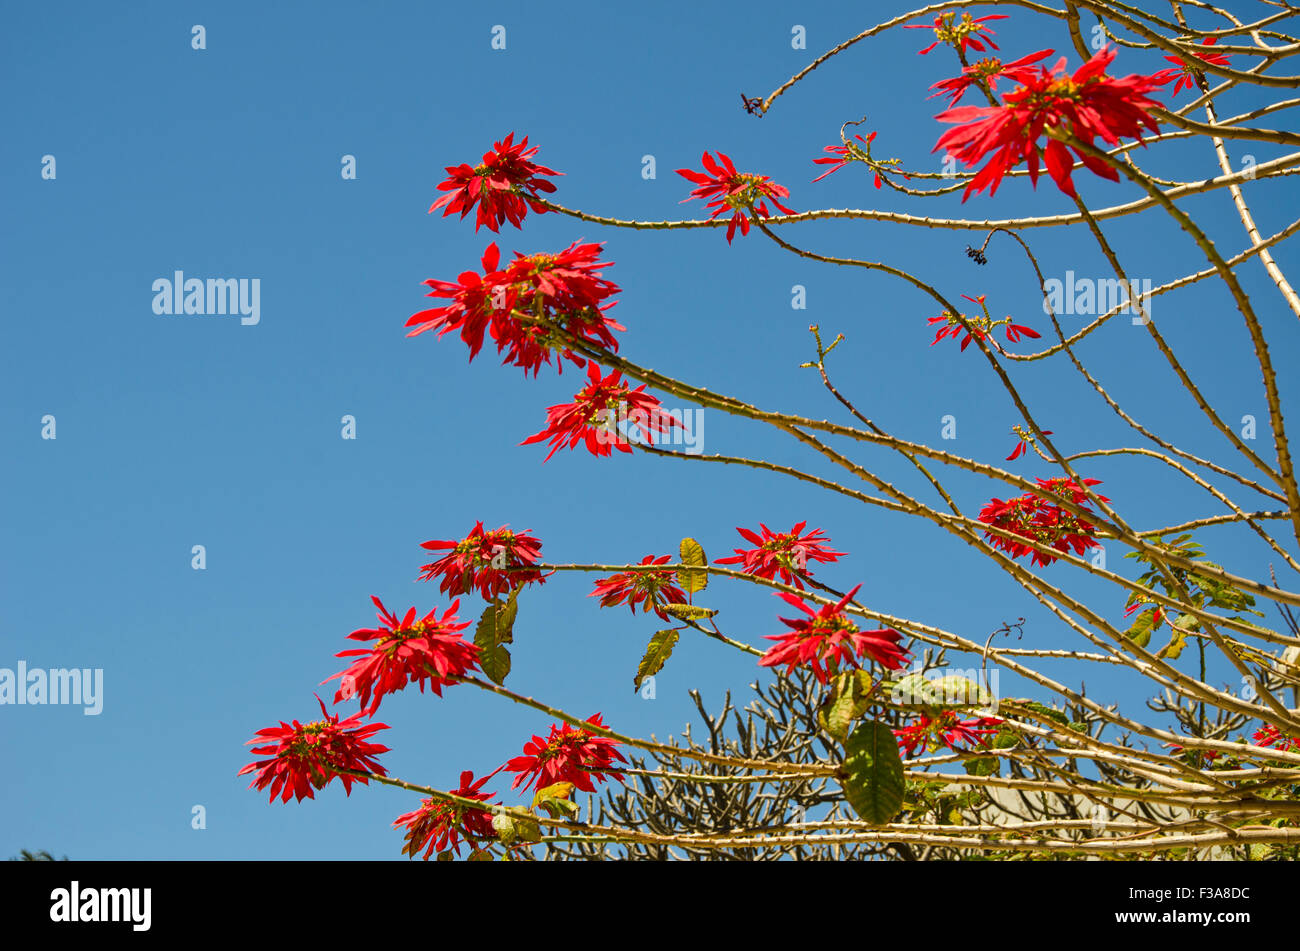 Beau Soleil arbre poinsettia sauvage en fleurs sur fond de ciel Banque D'Images